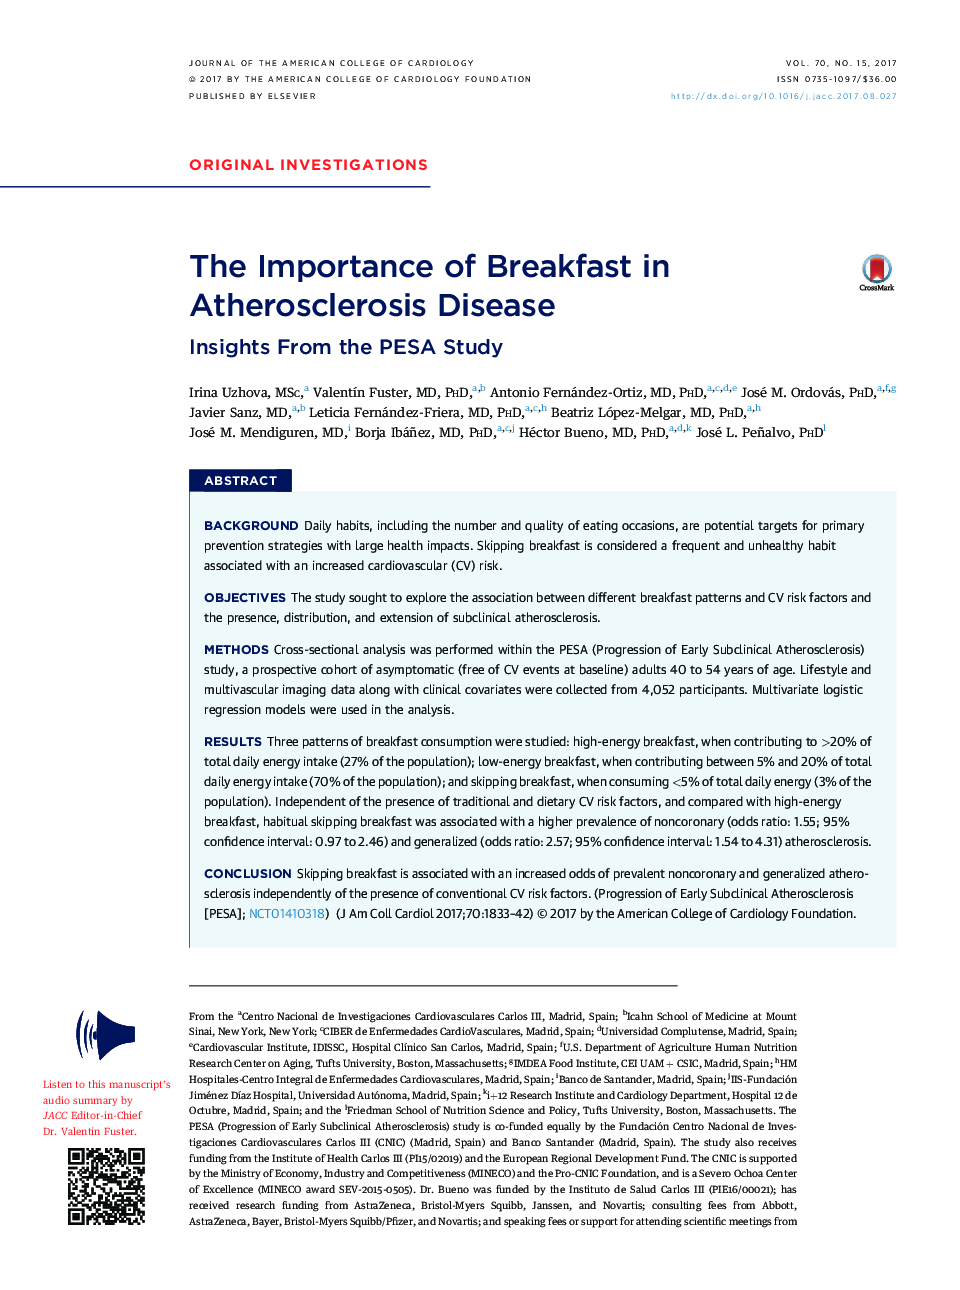 اهمیت صبحانه در بیماری آترواسکلروز 